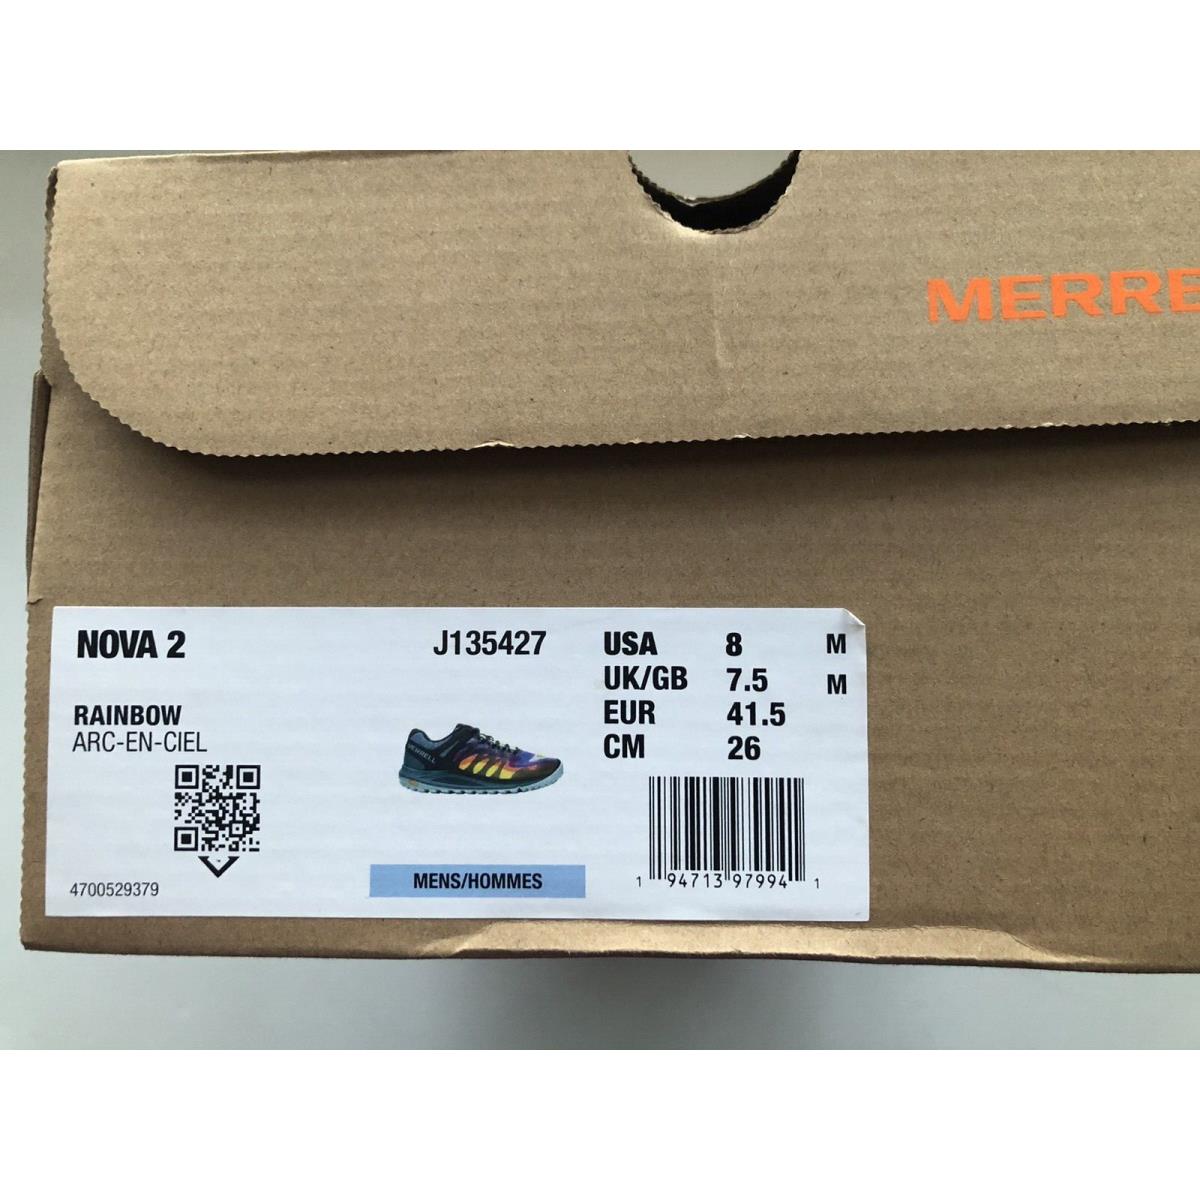 Merrell shoes NOVA - Multicolor 4